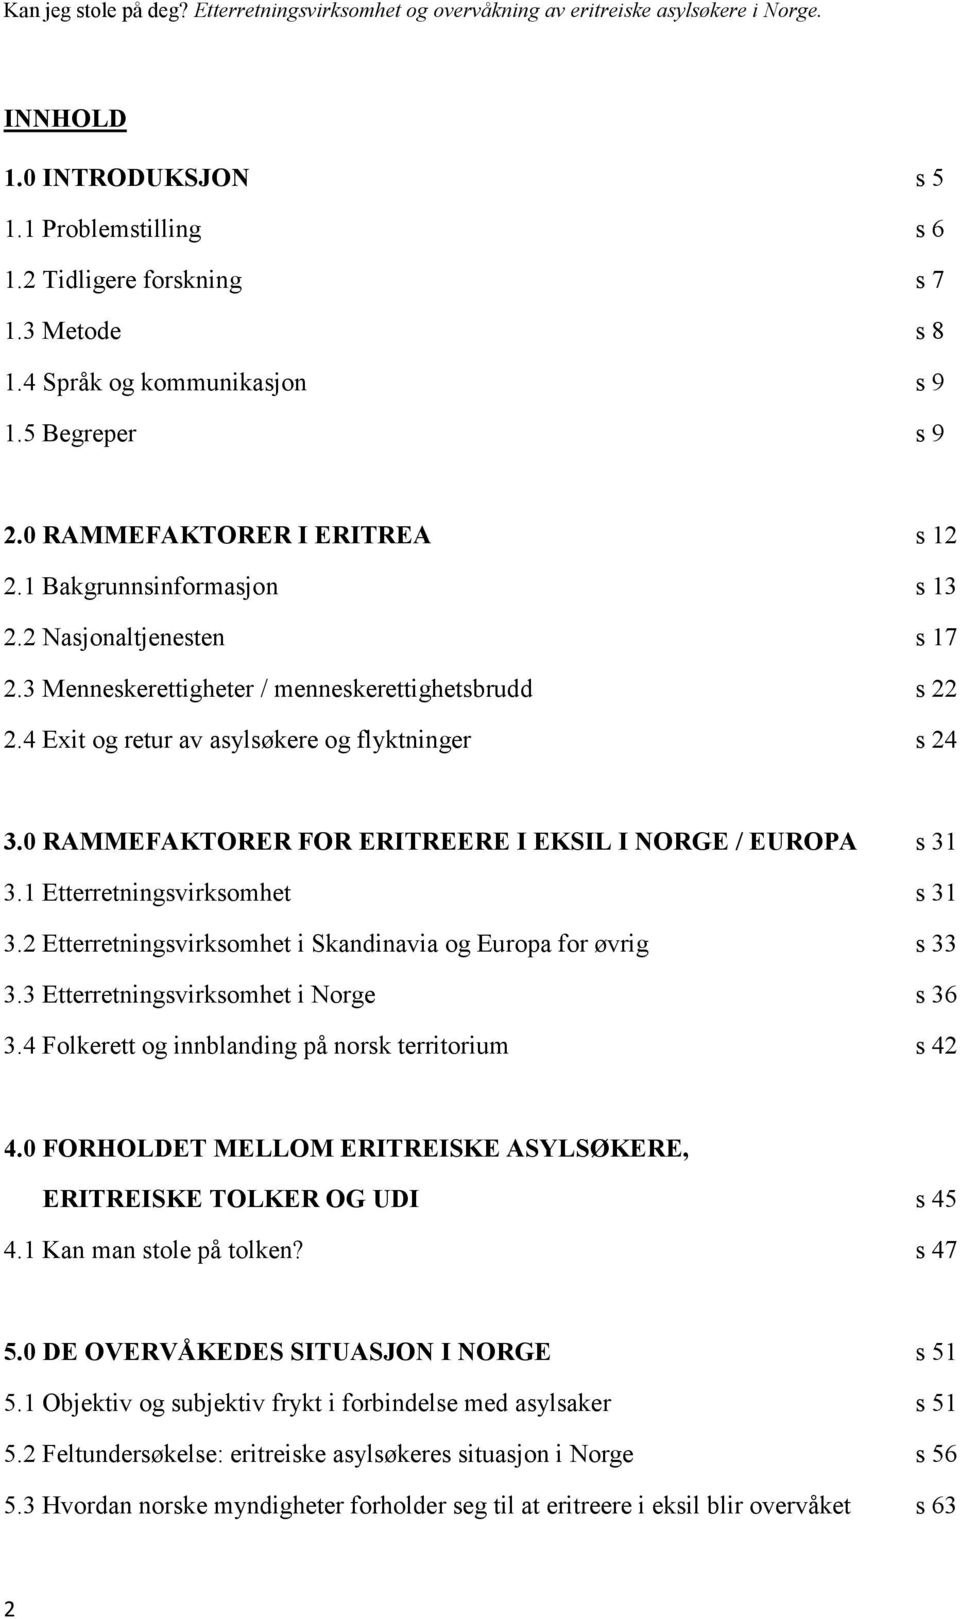 0 RAMMEFAKTORER FOR ERITREERE I EKSIL I NORGE / EUROPA s 31 3.1 Etterretningsvirksomhet s 31 3.2 Etterretningsvirksomhet i Skandinavia og Europa for øvrig s 33 3.